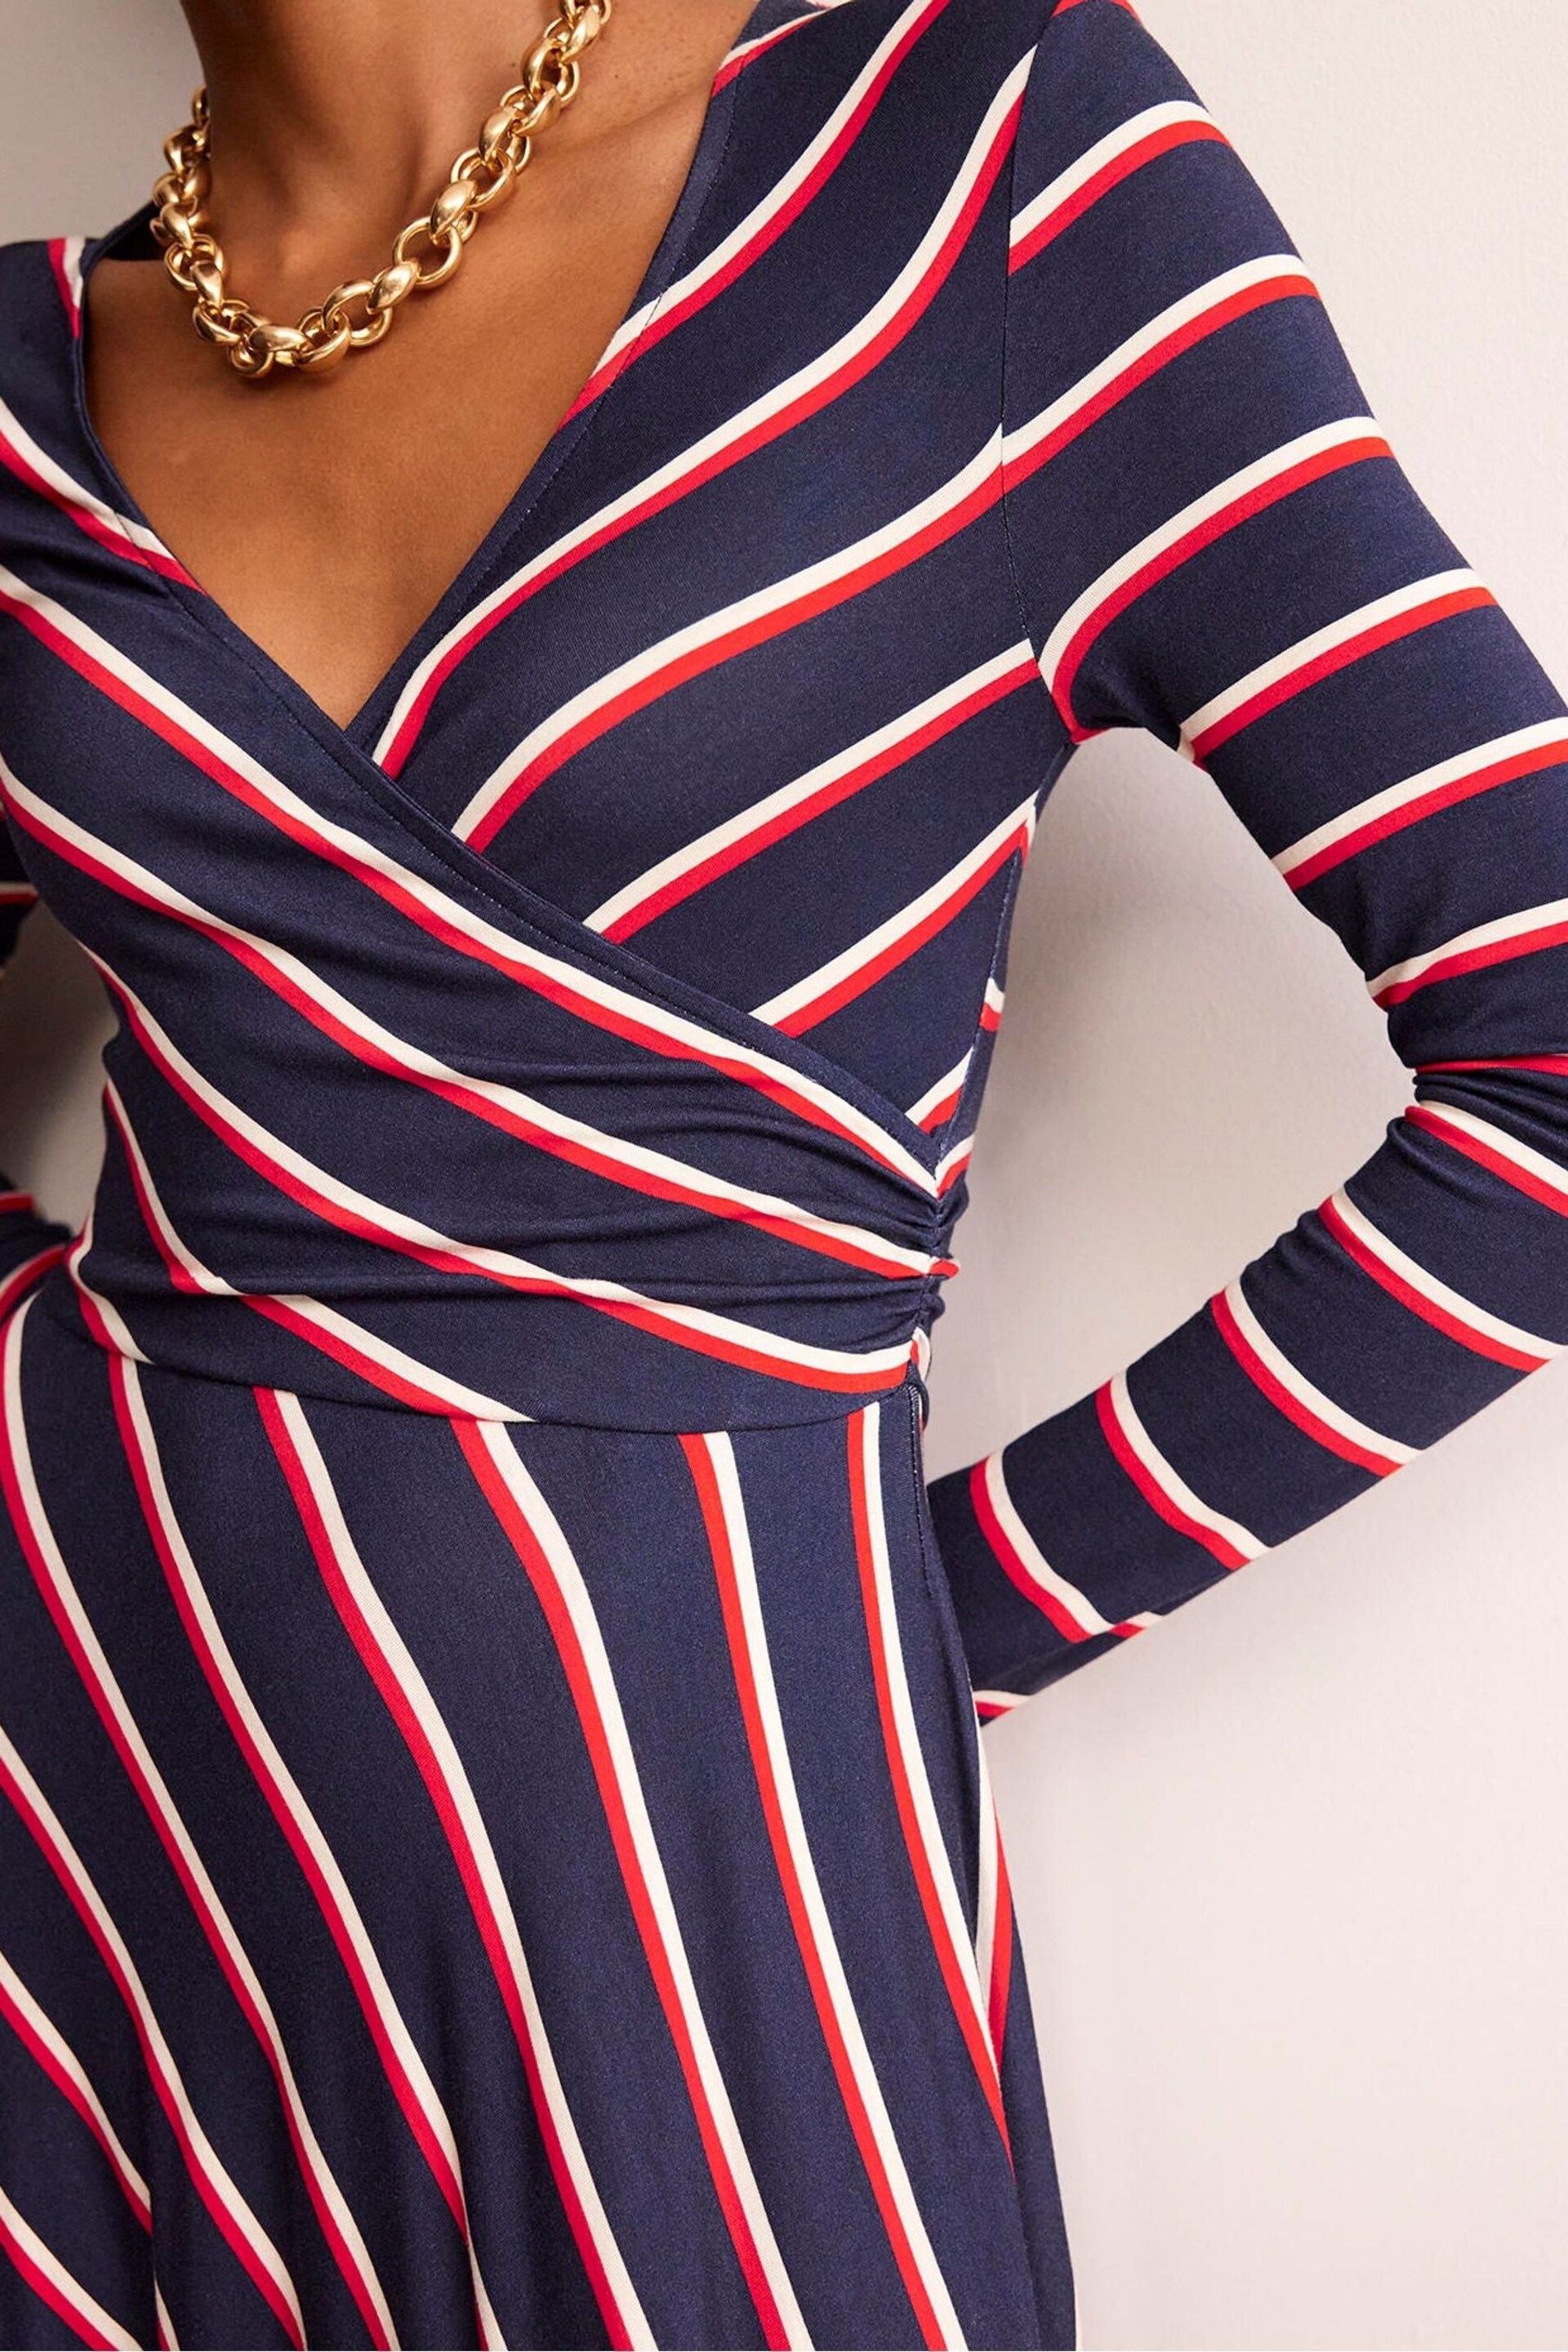 Boden Blue Hotch Stripe Jersey Midi Dress - Image 4 of 5